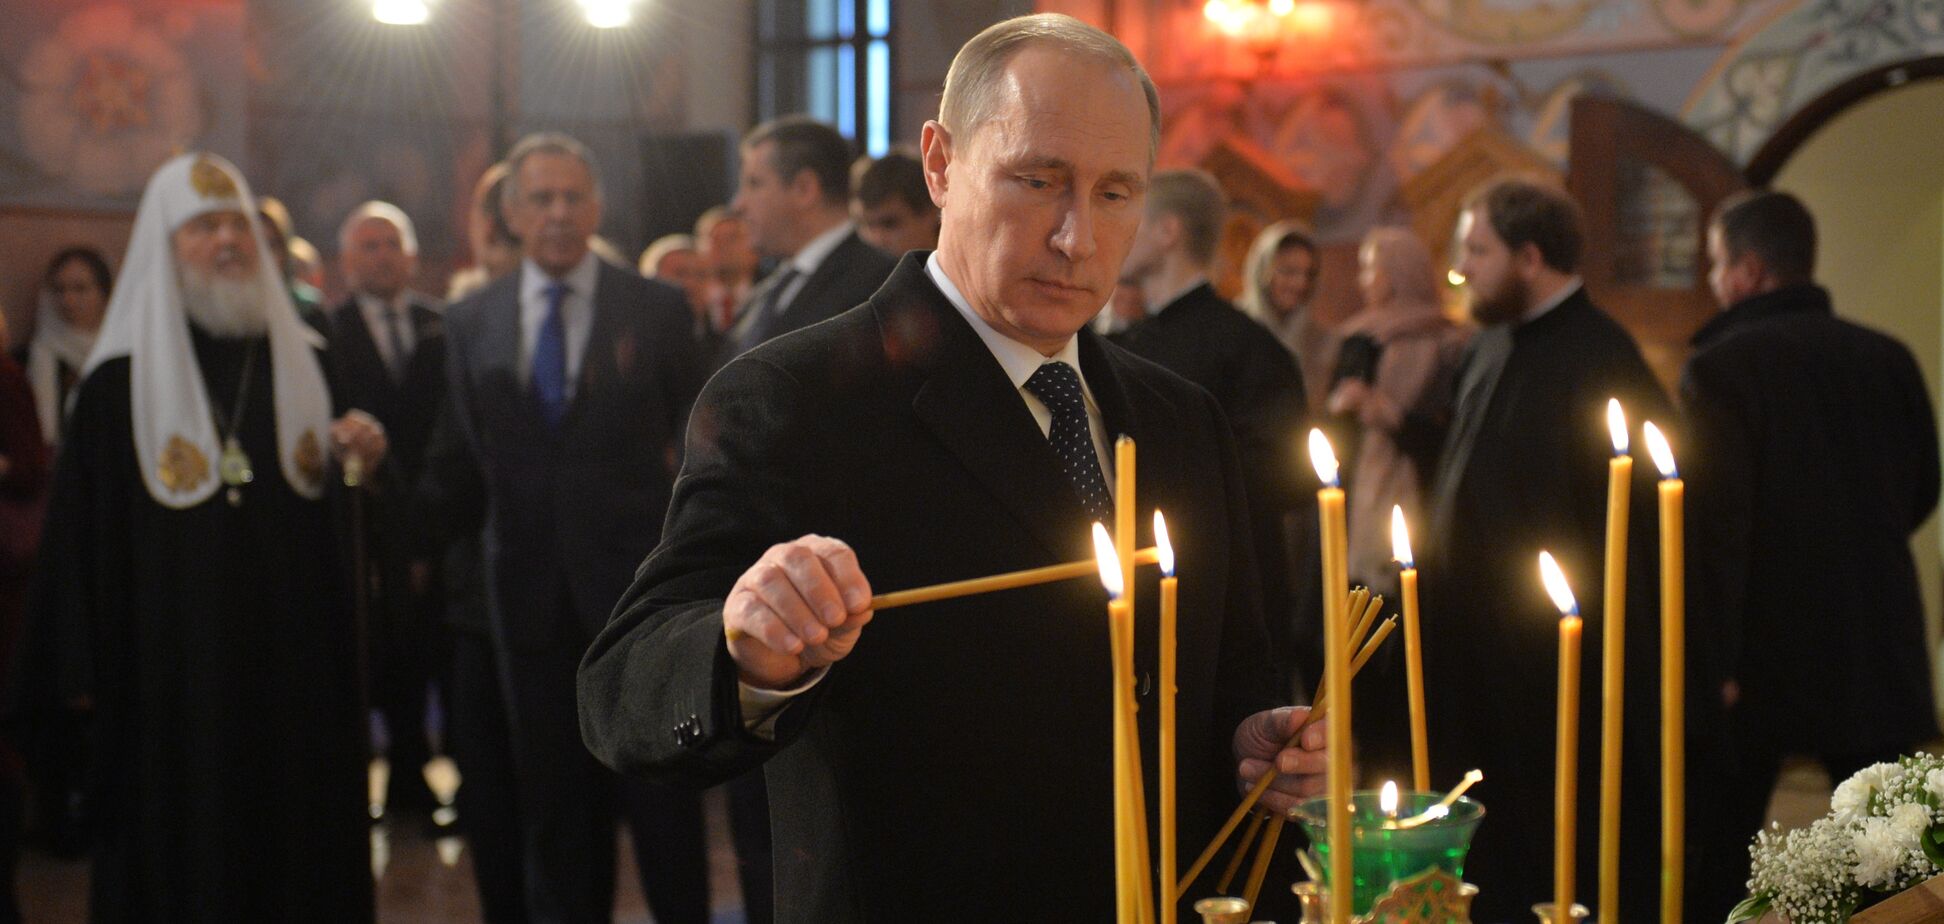 Христианство похоже на коммунизм? Эксперт пояснил, в чем Путин прав